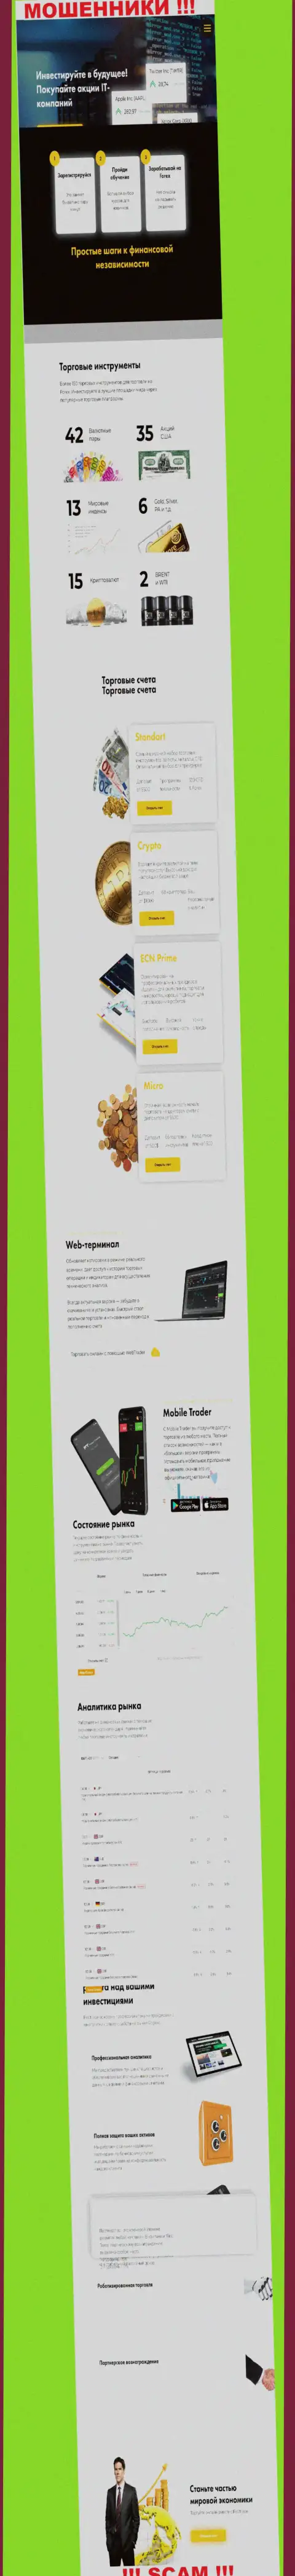 Главная страничка официального интернет-портала мошенников FirstTrade Corp